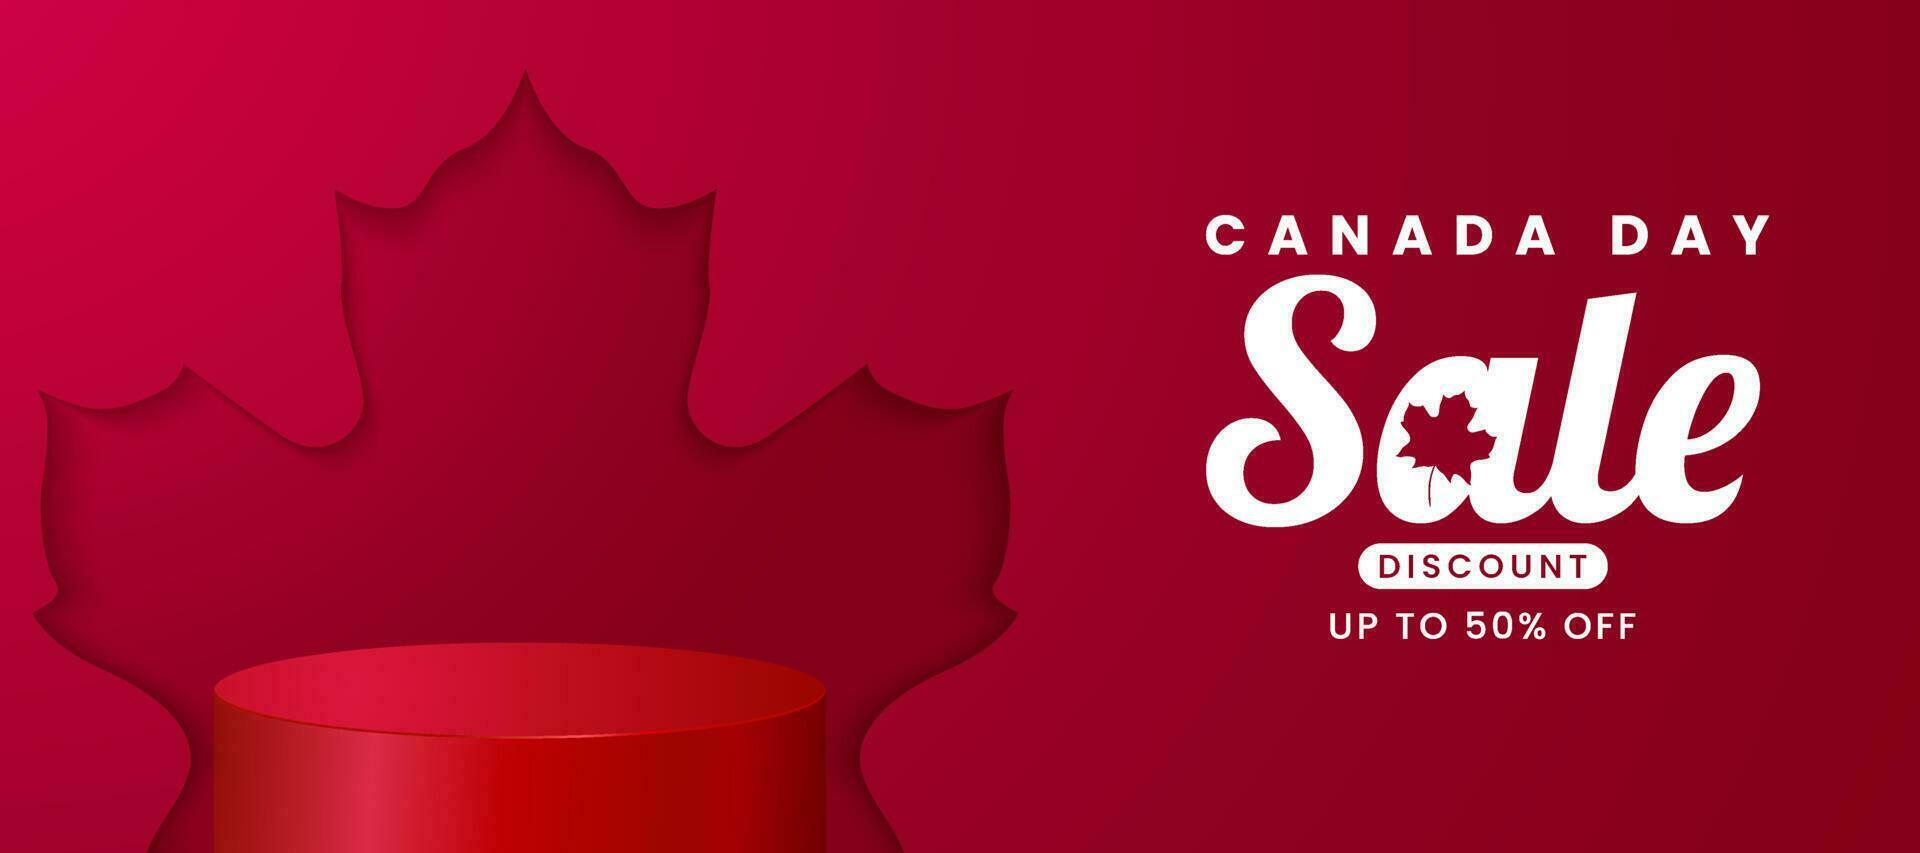 1e juli 2020 gelukkig Canada dag banier uitverkoop voor onafhankelijkheid dag achtergrond met rood esdoorn- en podium. vector illustratie groet kaart. Canada vakantie concept ontwerp. rood wit thema met esdoorn- blad.